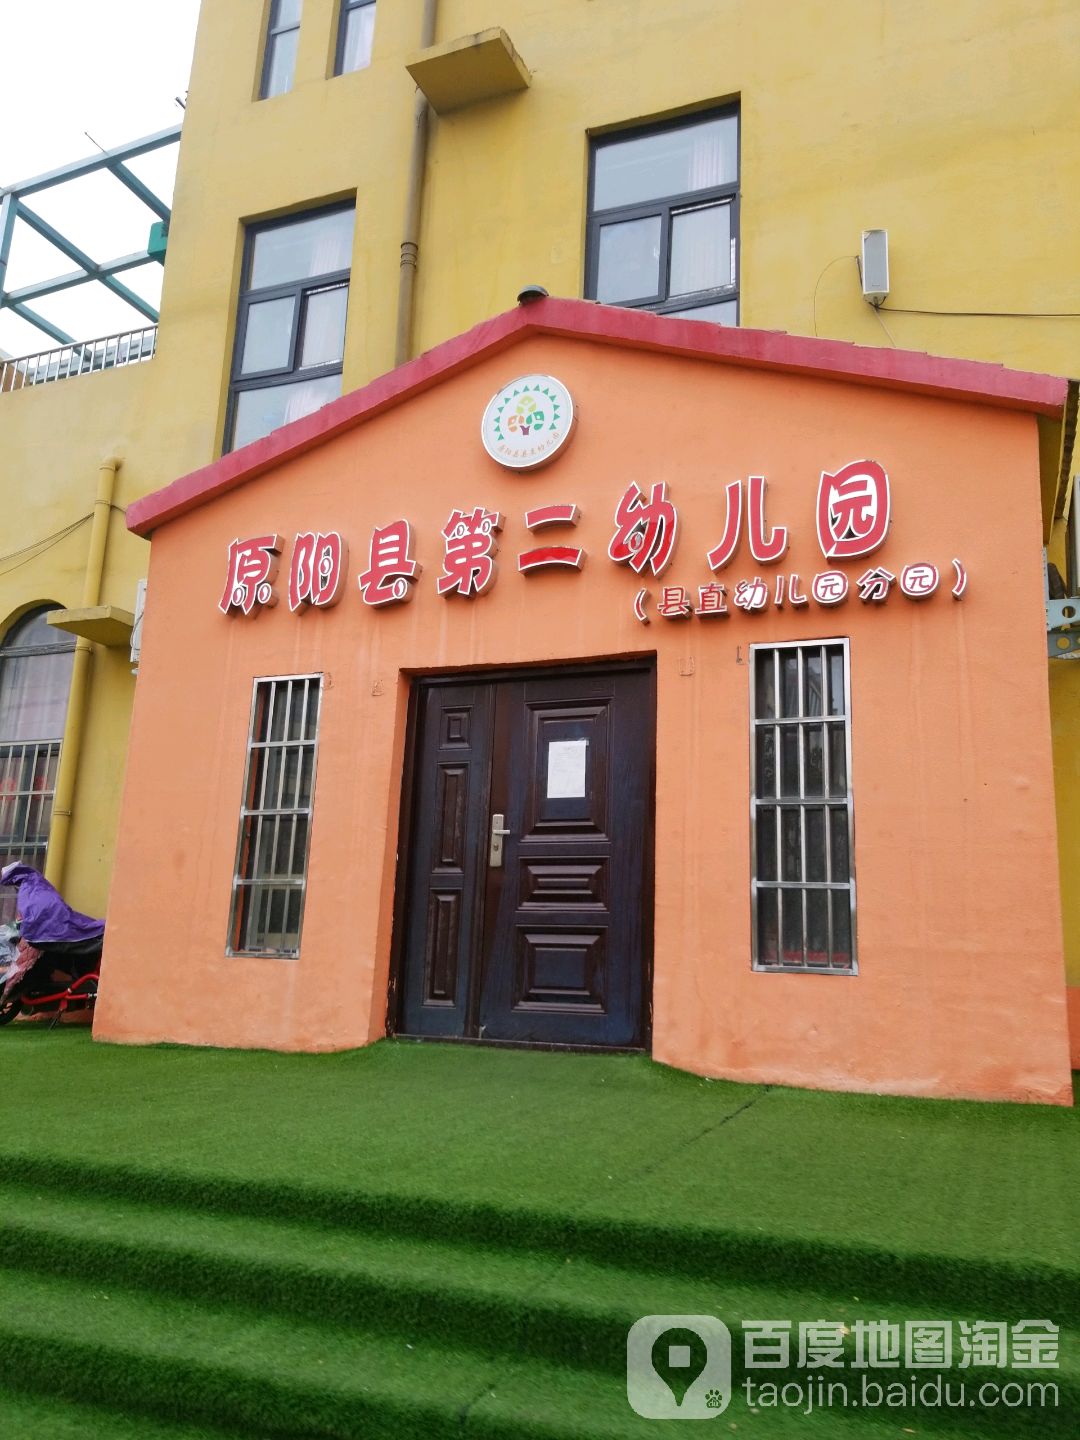 原阳县第二幼儿园(县直幼儿园分园)的图片